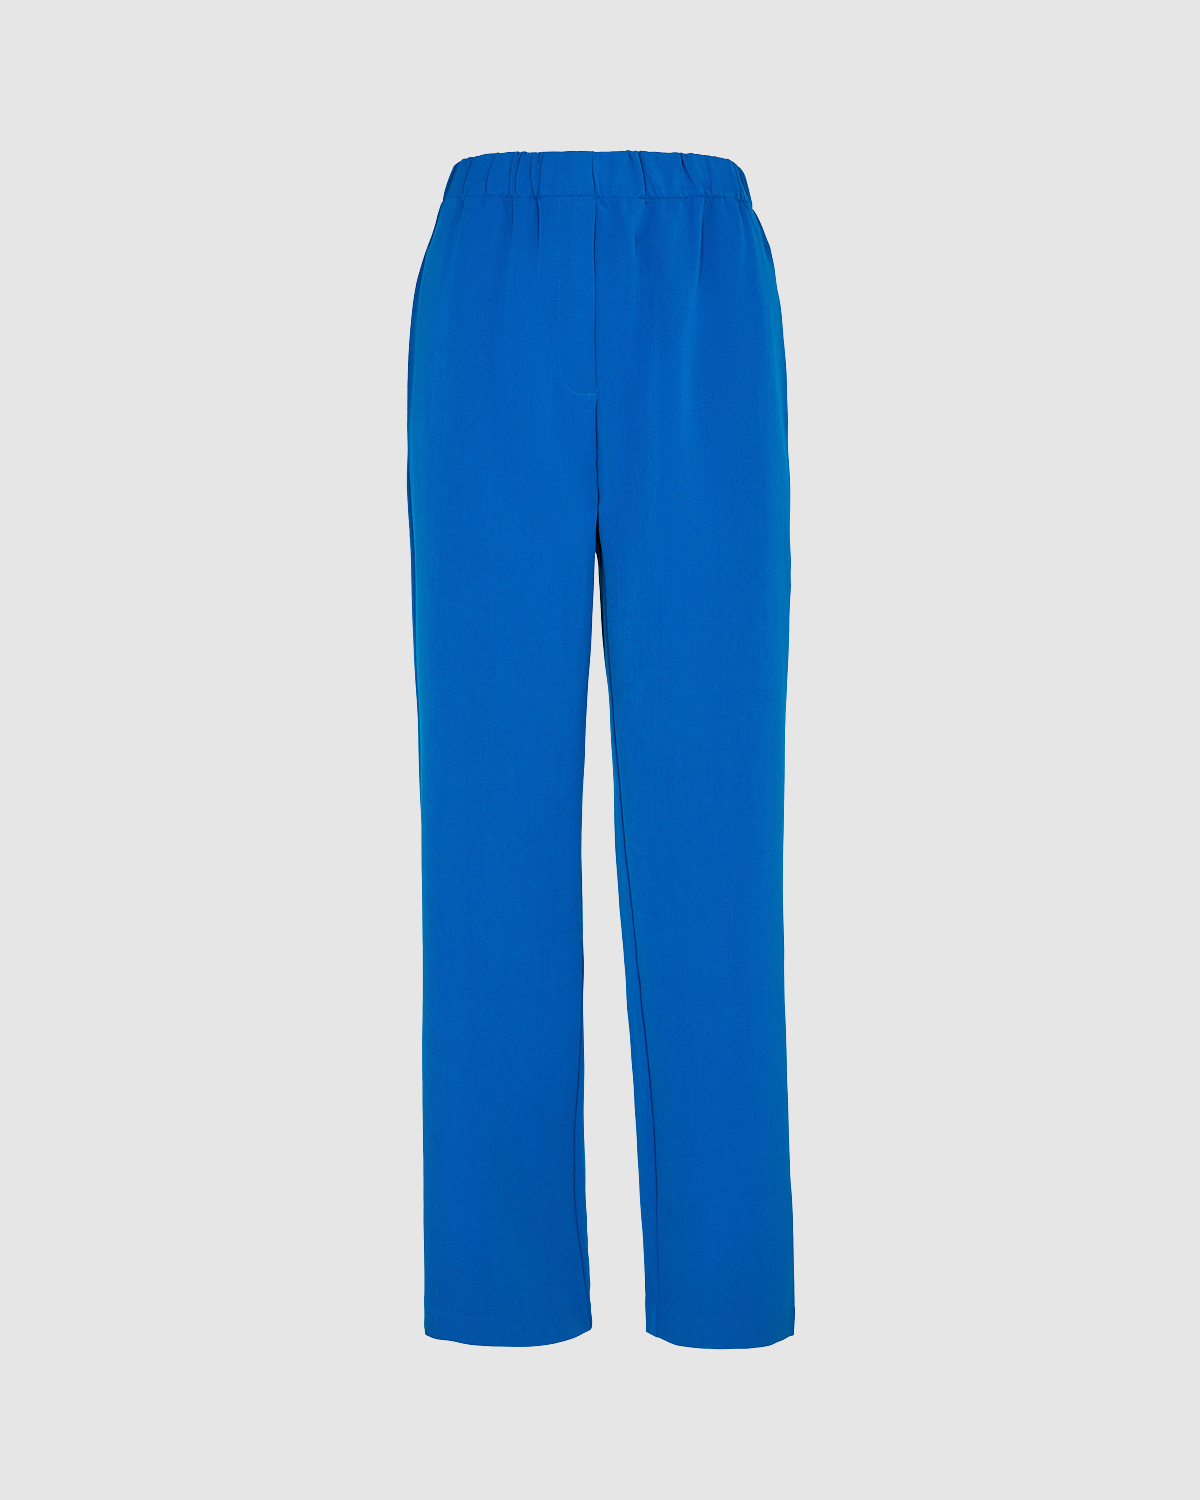 Leeroy Pants Blue - Minimum